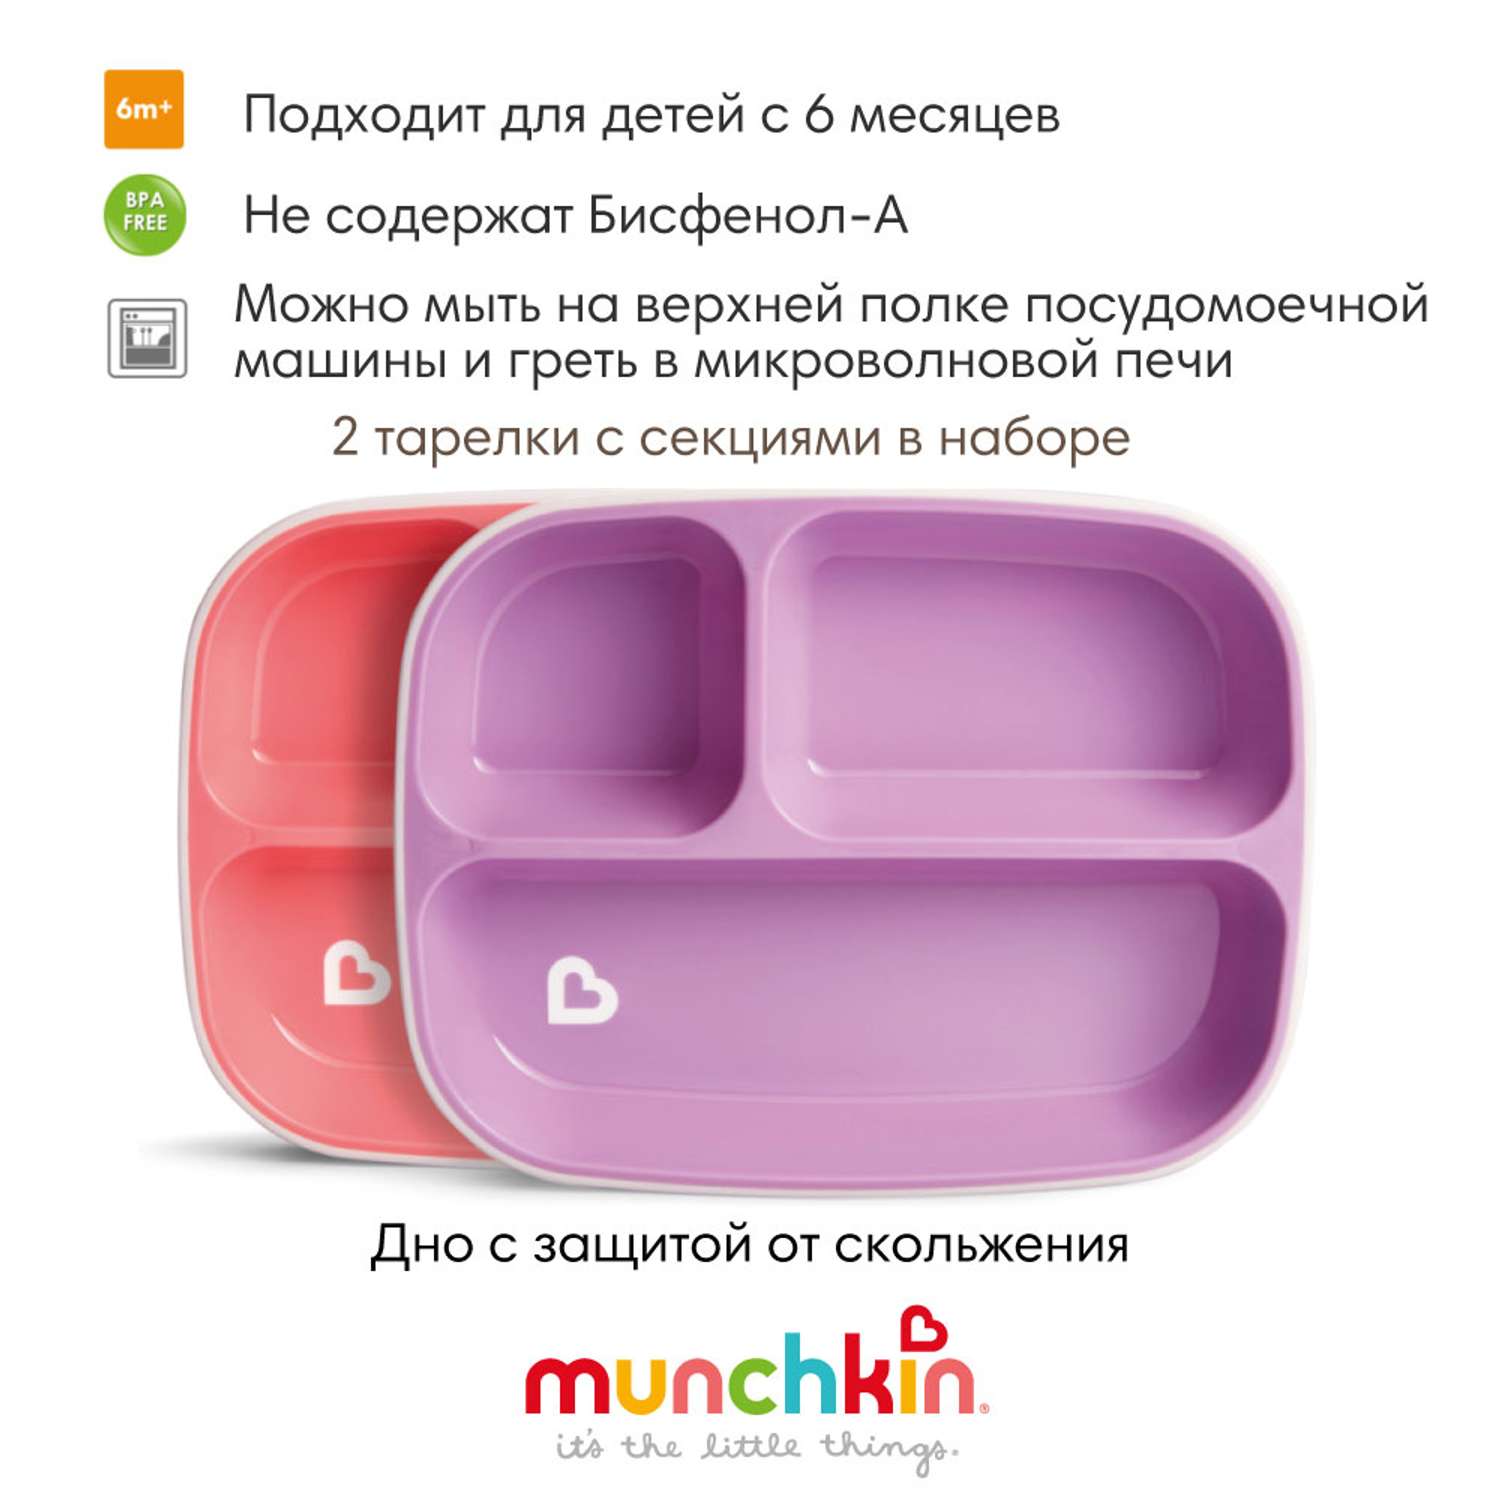 Тарелки Munchkin детские секционные Splash набор 2шт. розовая фиолетовая - фото 2